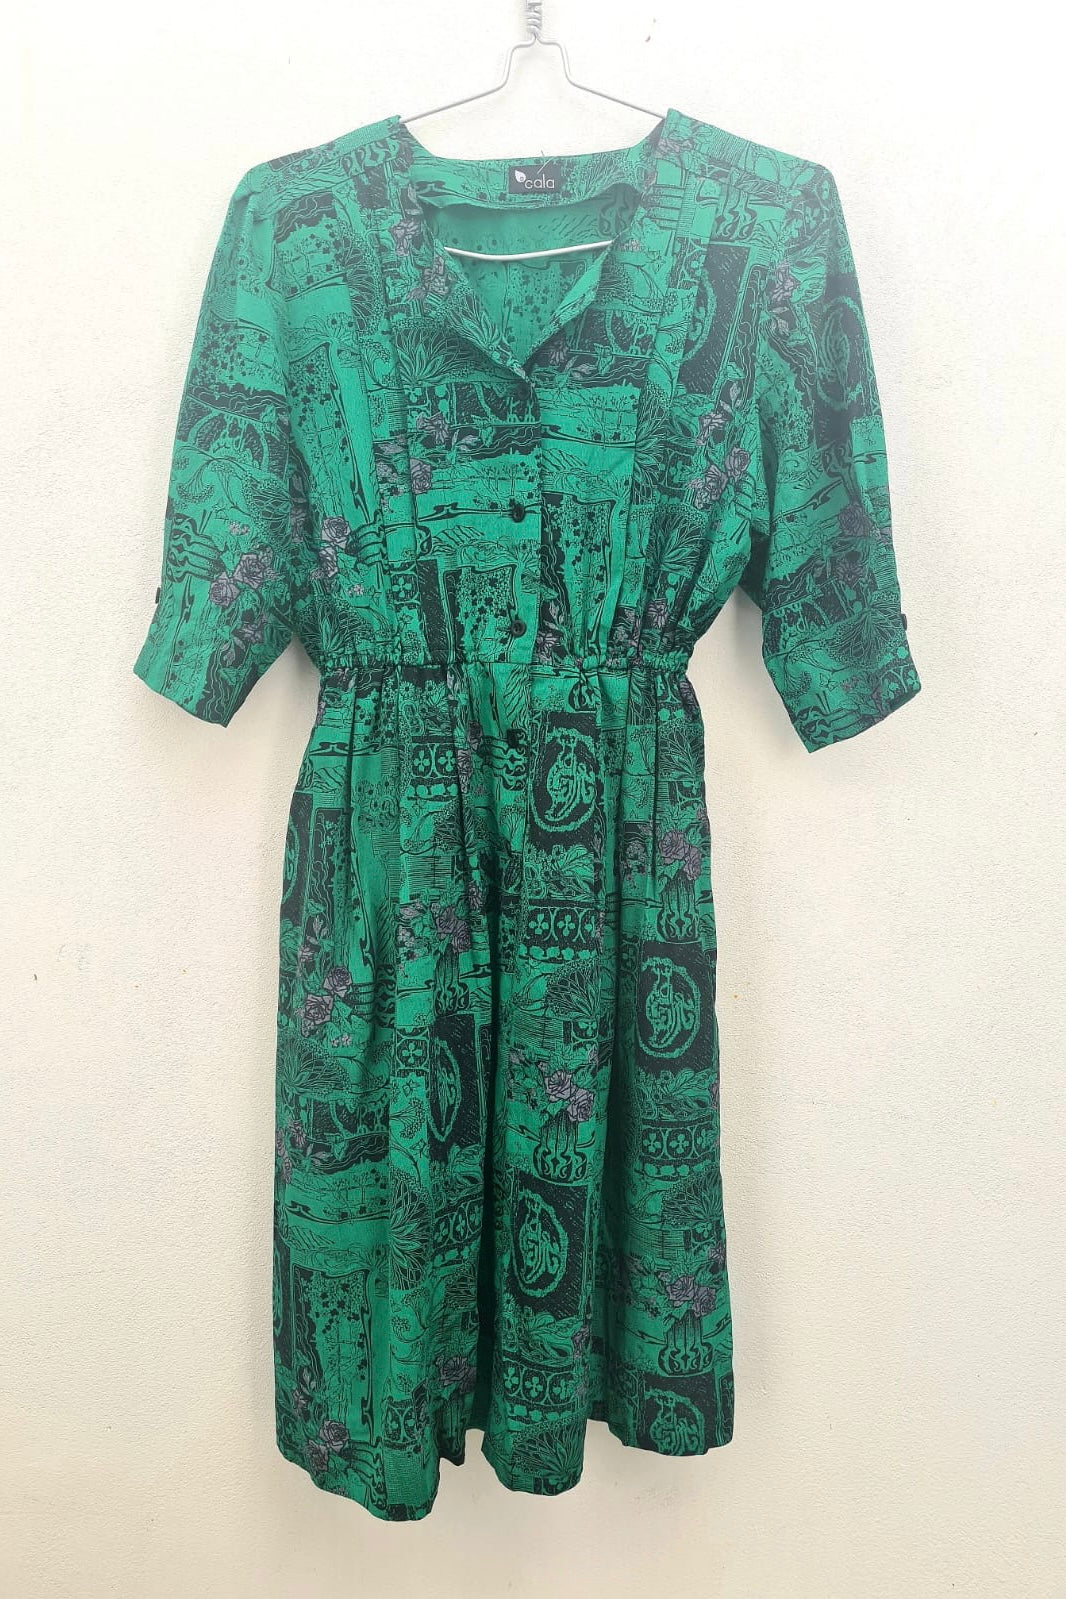 שמלת וינטג׳ ירוק ציורים